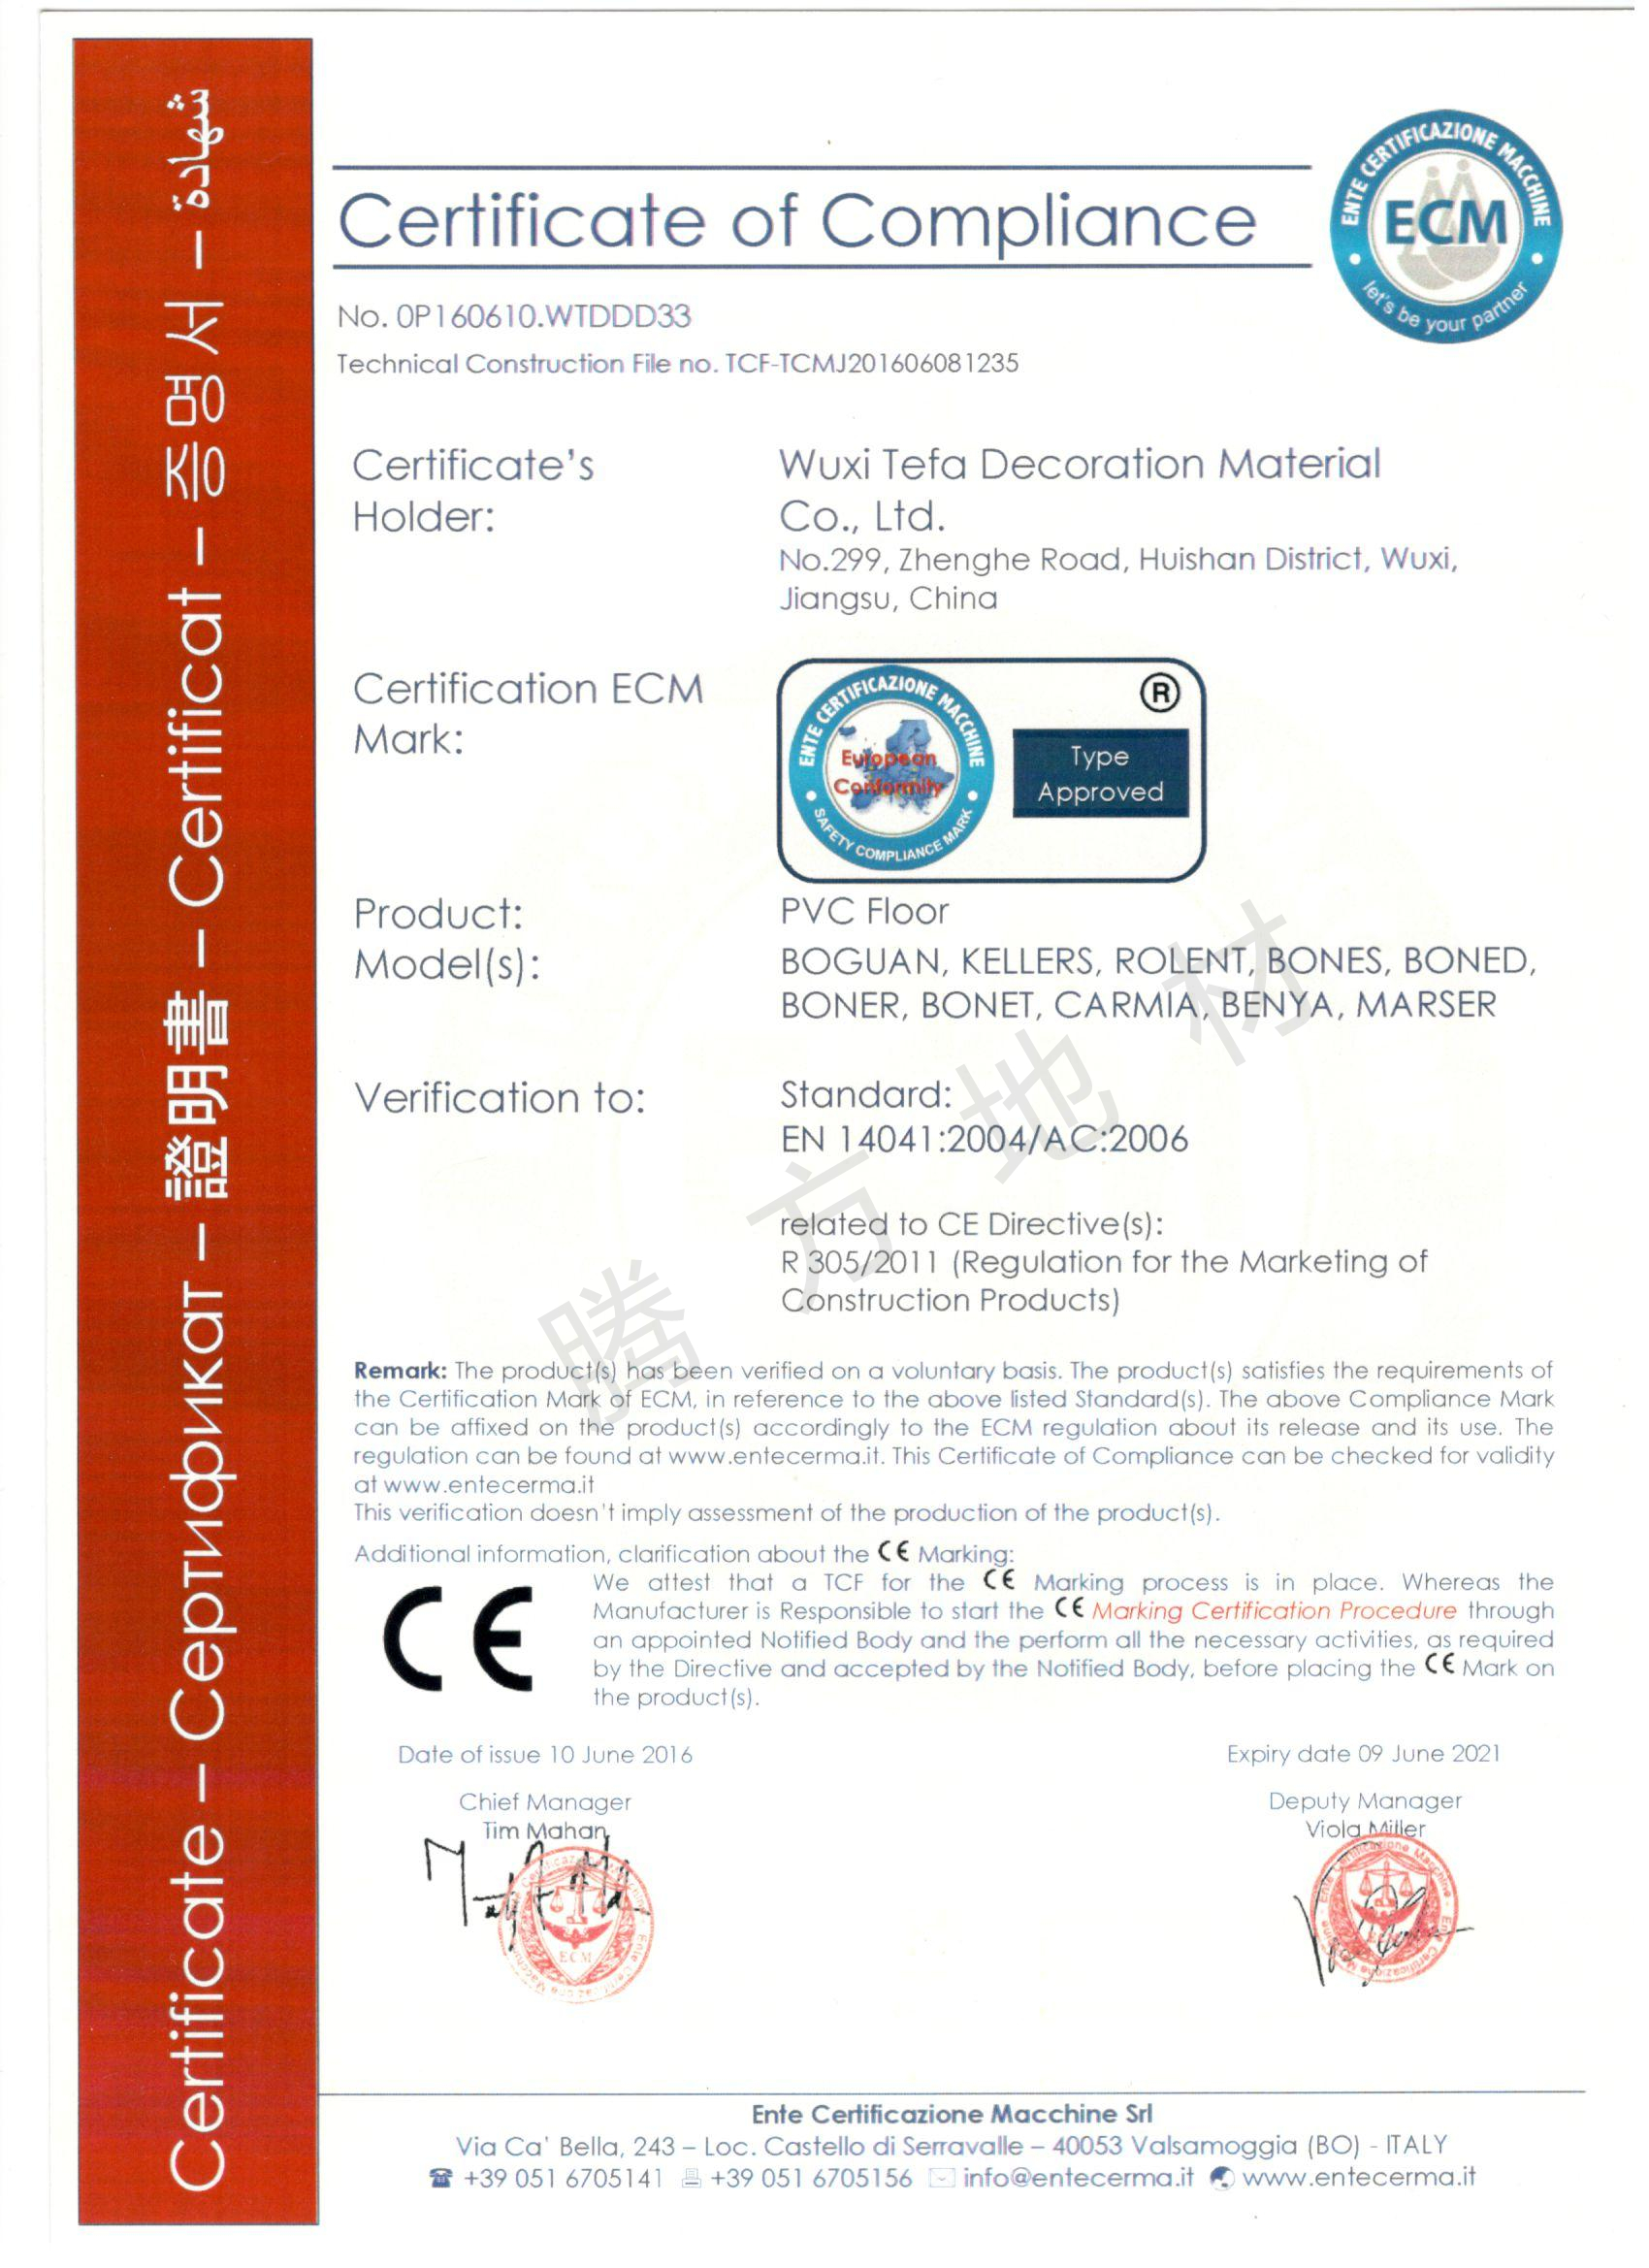 腾方-CE认证证书